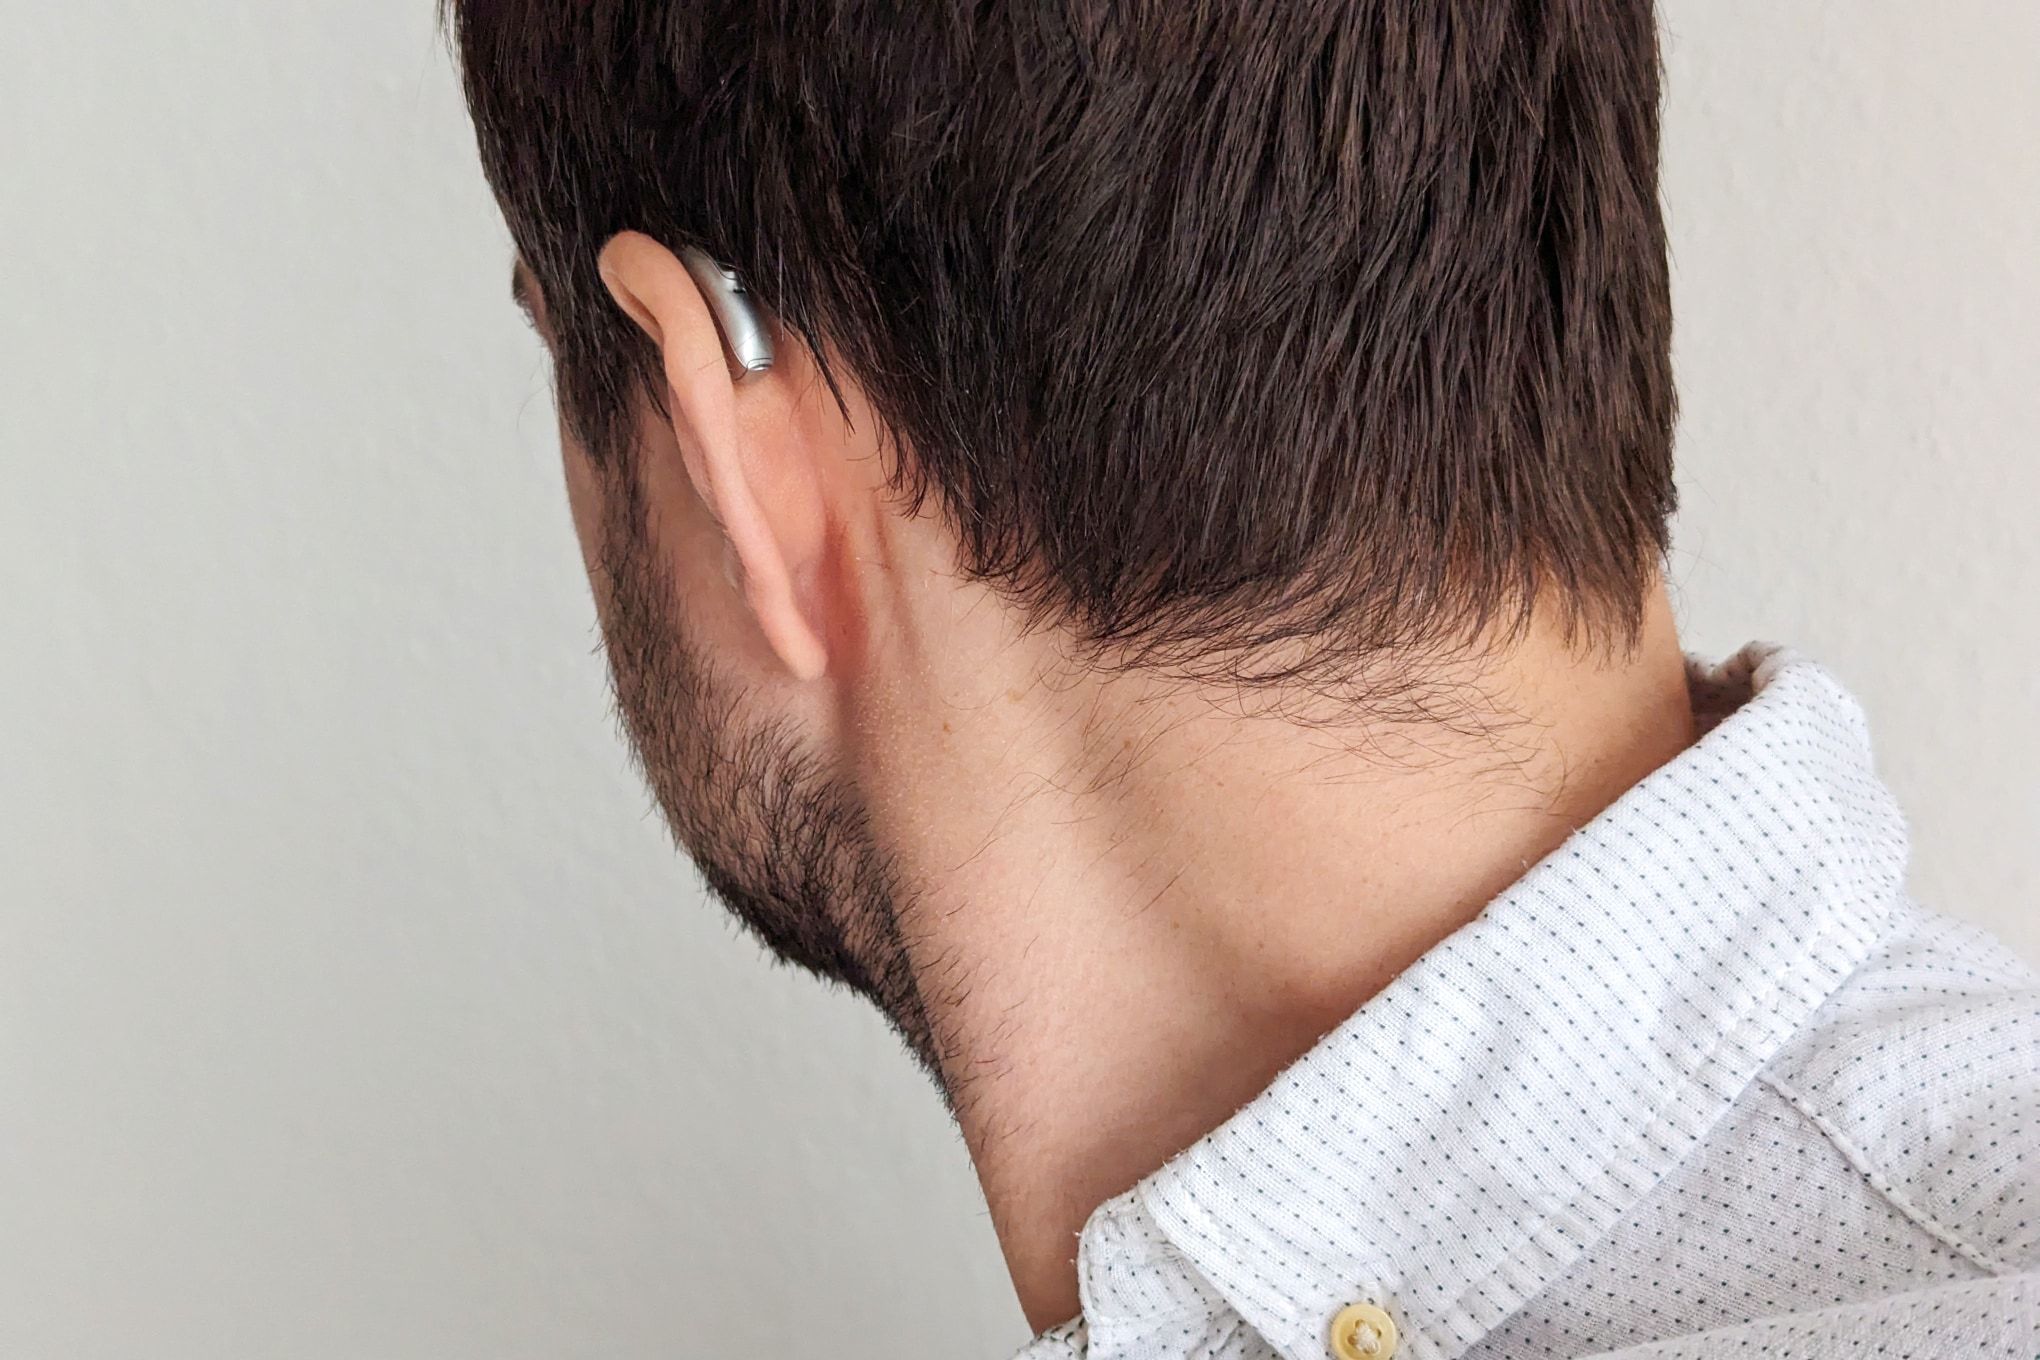 Um homem está de costas para a câmera, com um aparelho auditivo Phonak visível atrás da orelha